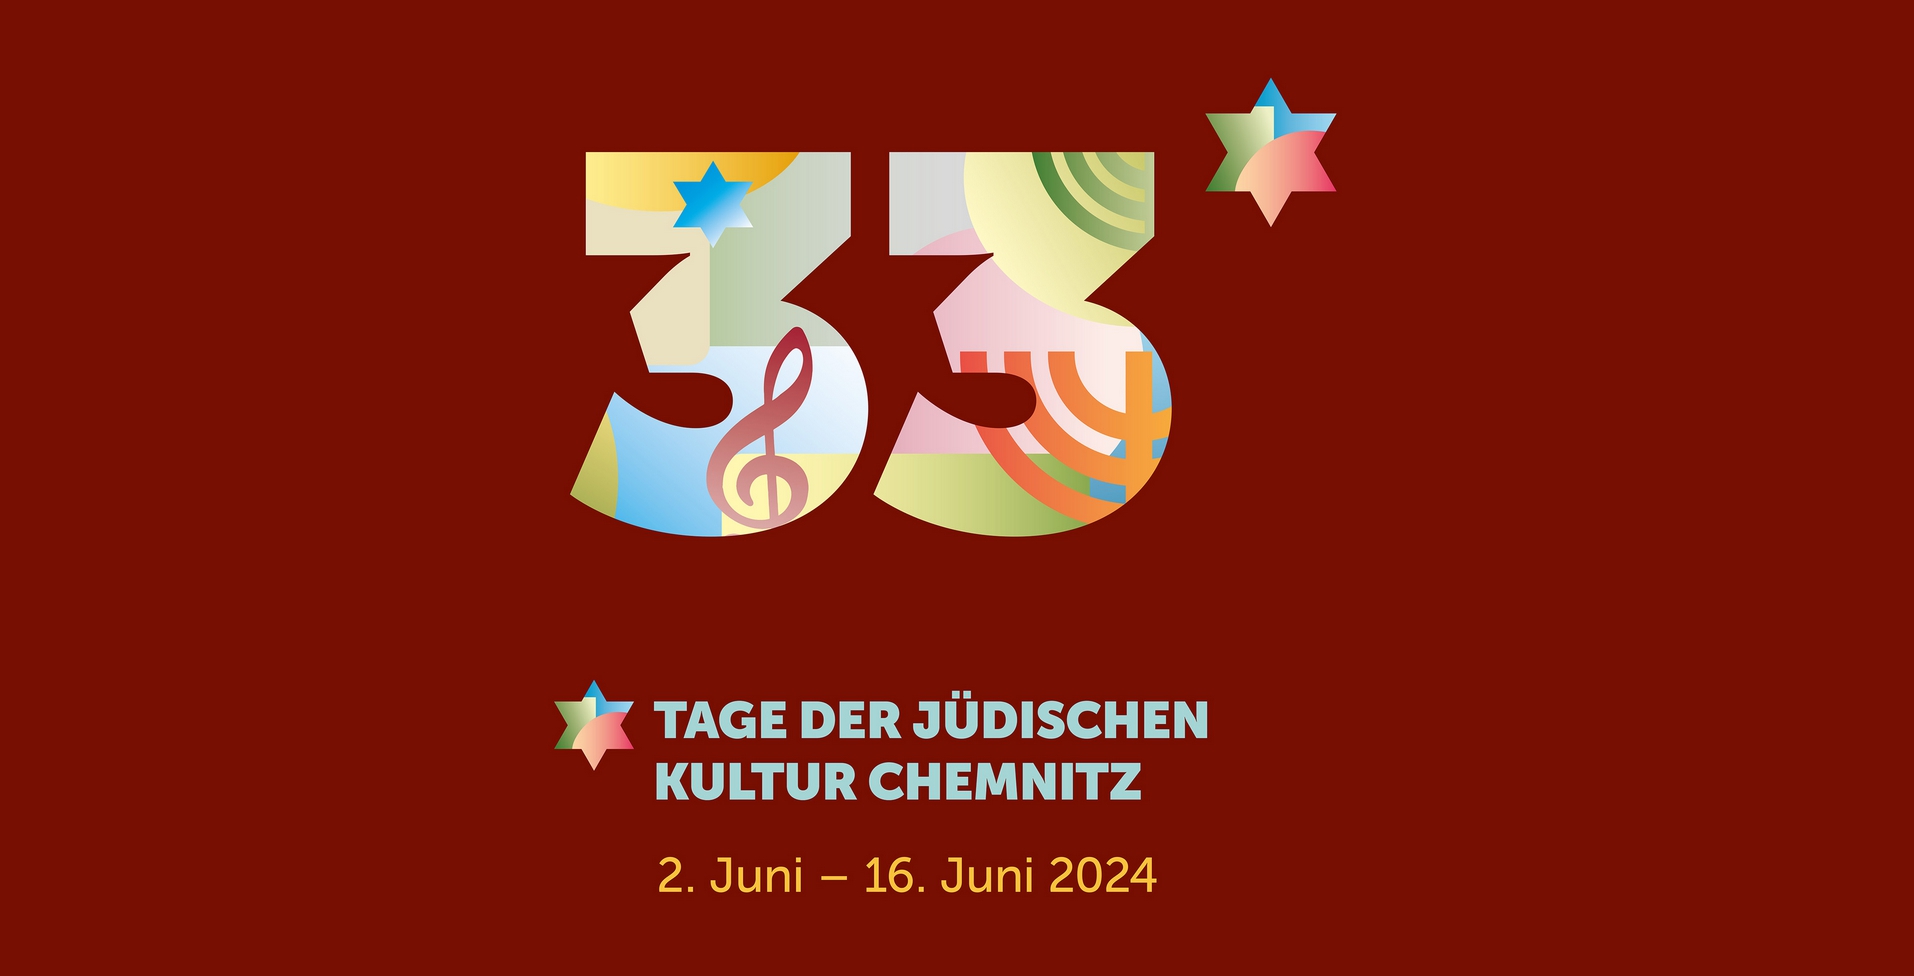 Logo der 33. Tage der jüdischen Kultur Chemnitz